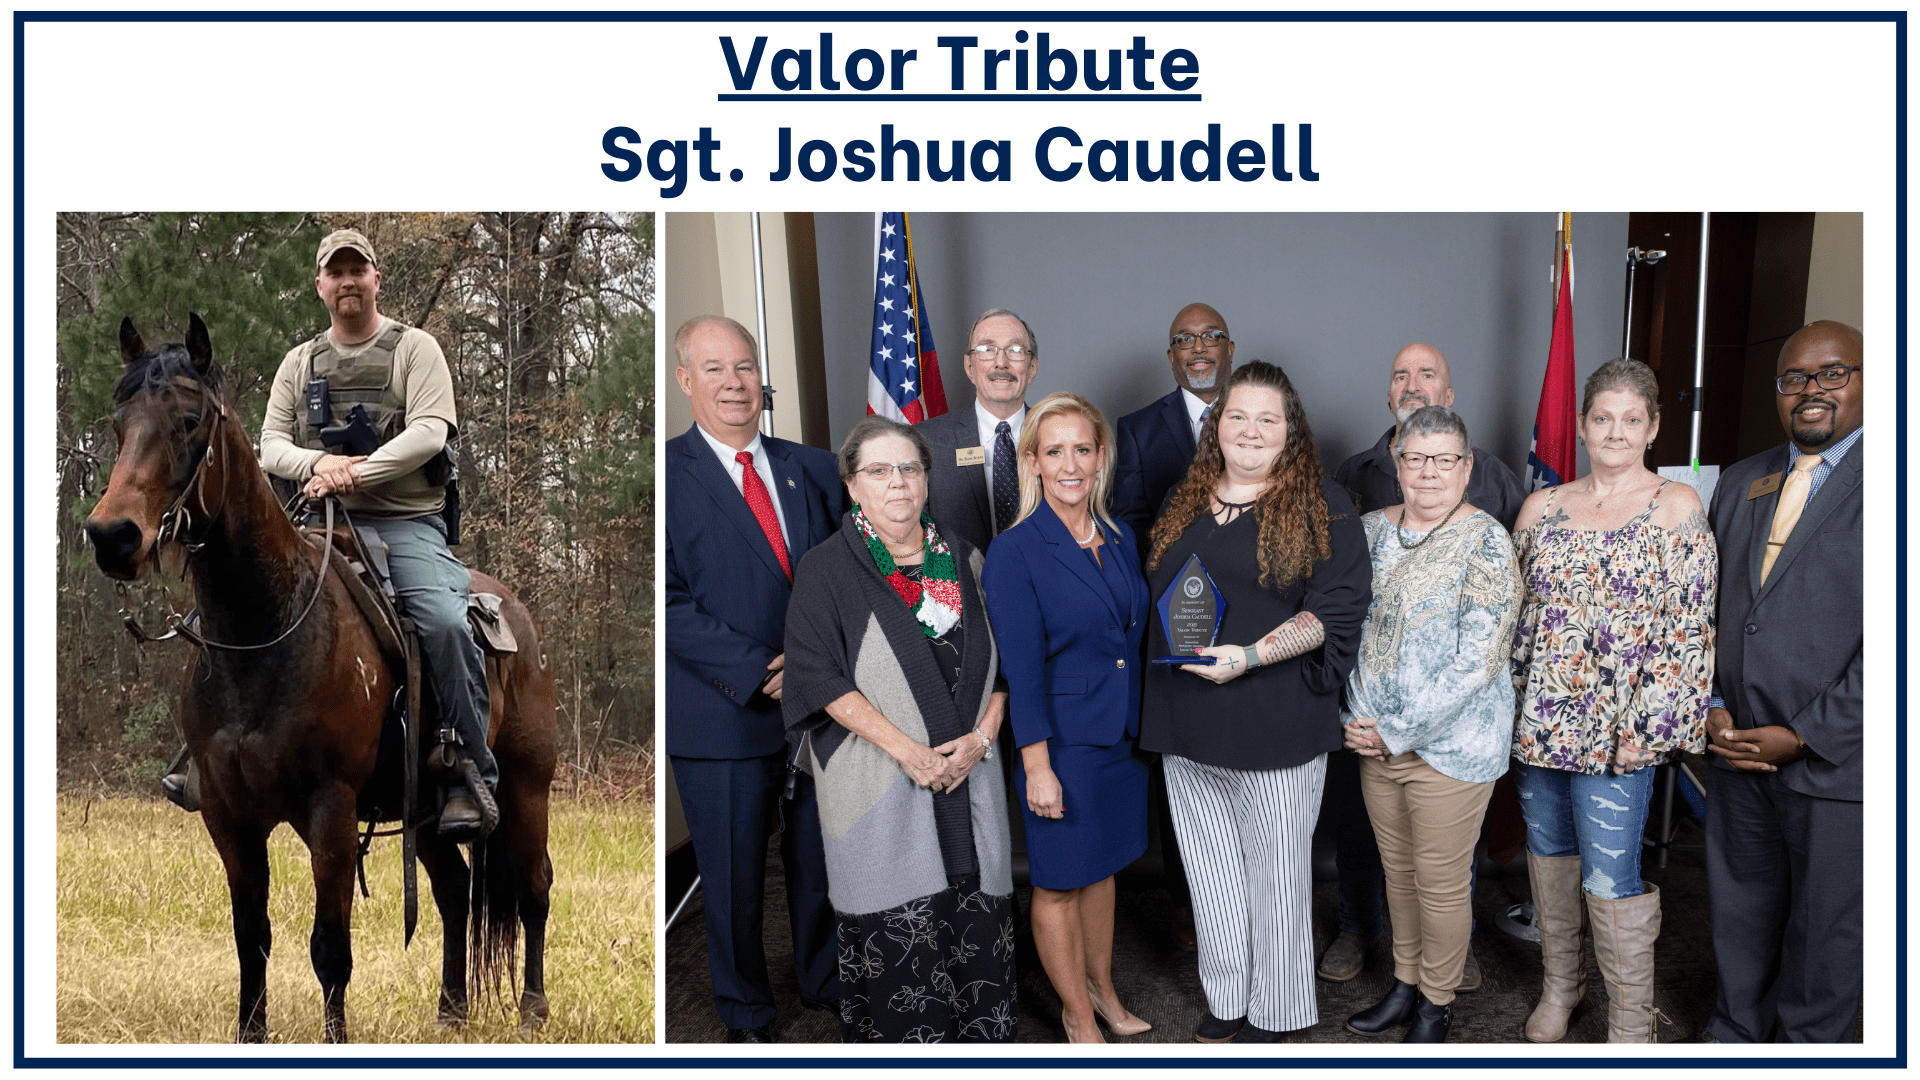 Valor - Sgt. Joshua Caudell 1